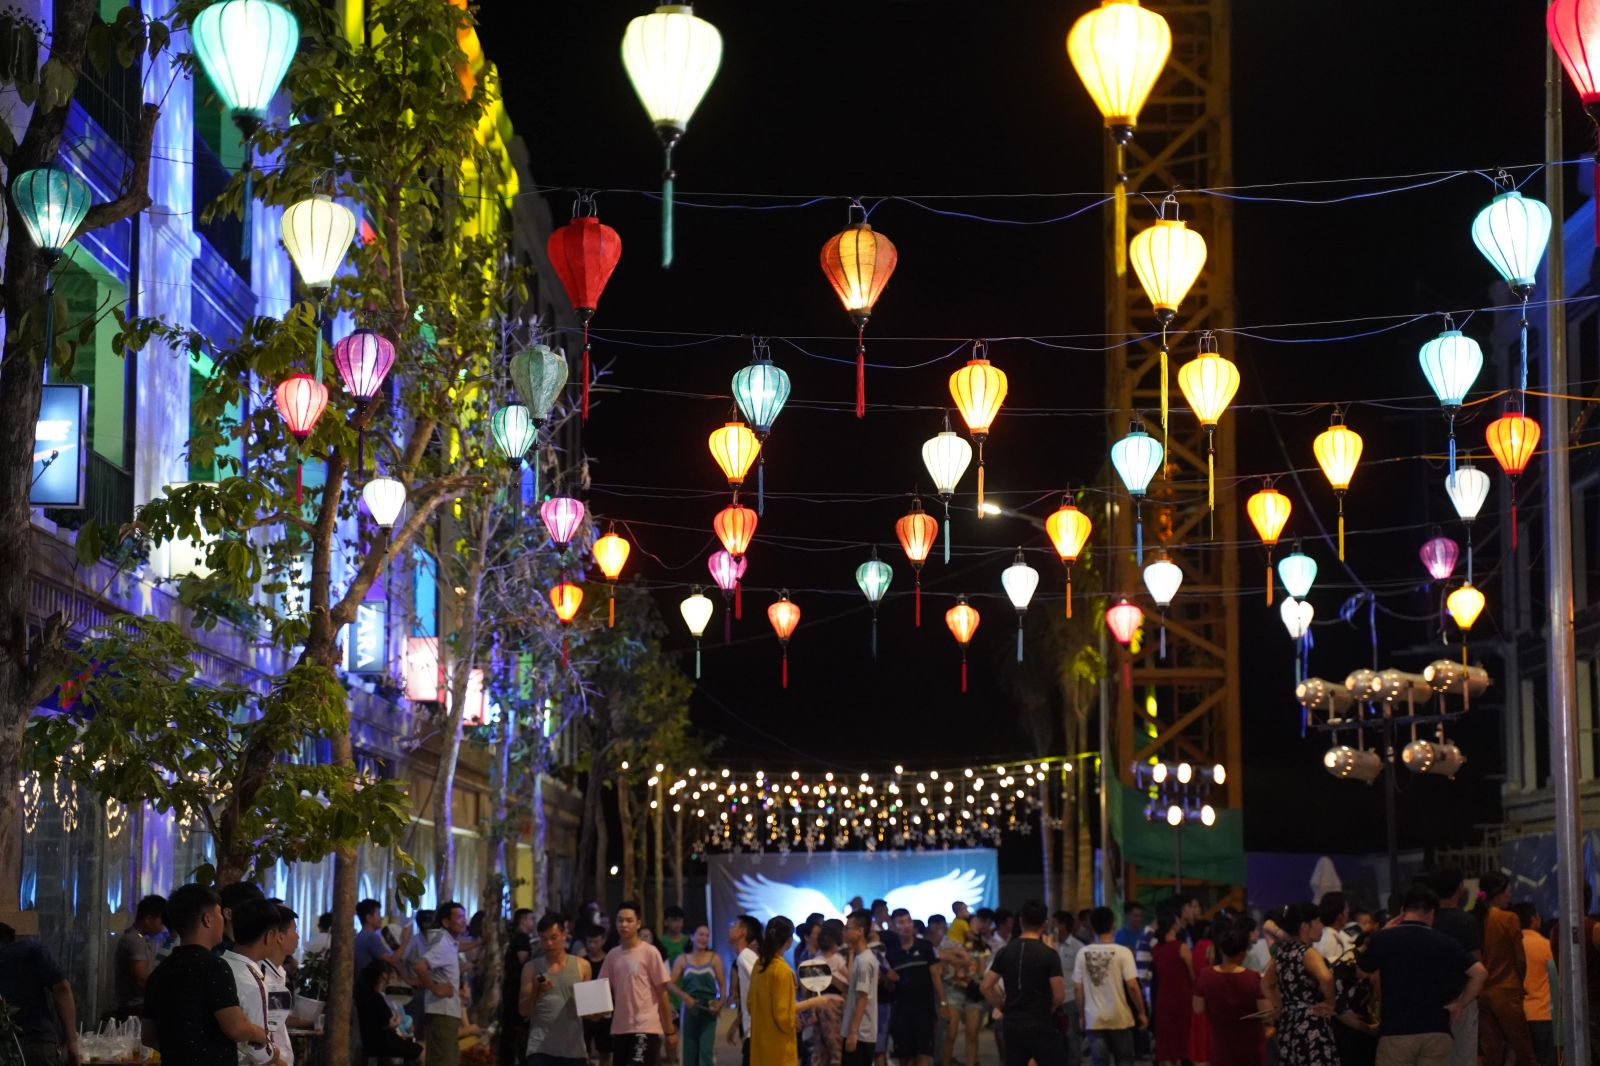 Hàng trăm người dân xứ Thanh đã đến tham dự lễ giới thiệu phố đêm Hoa Châu